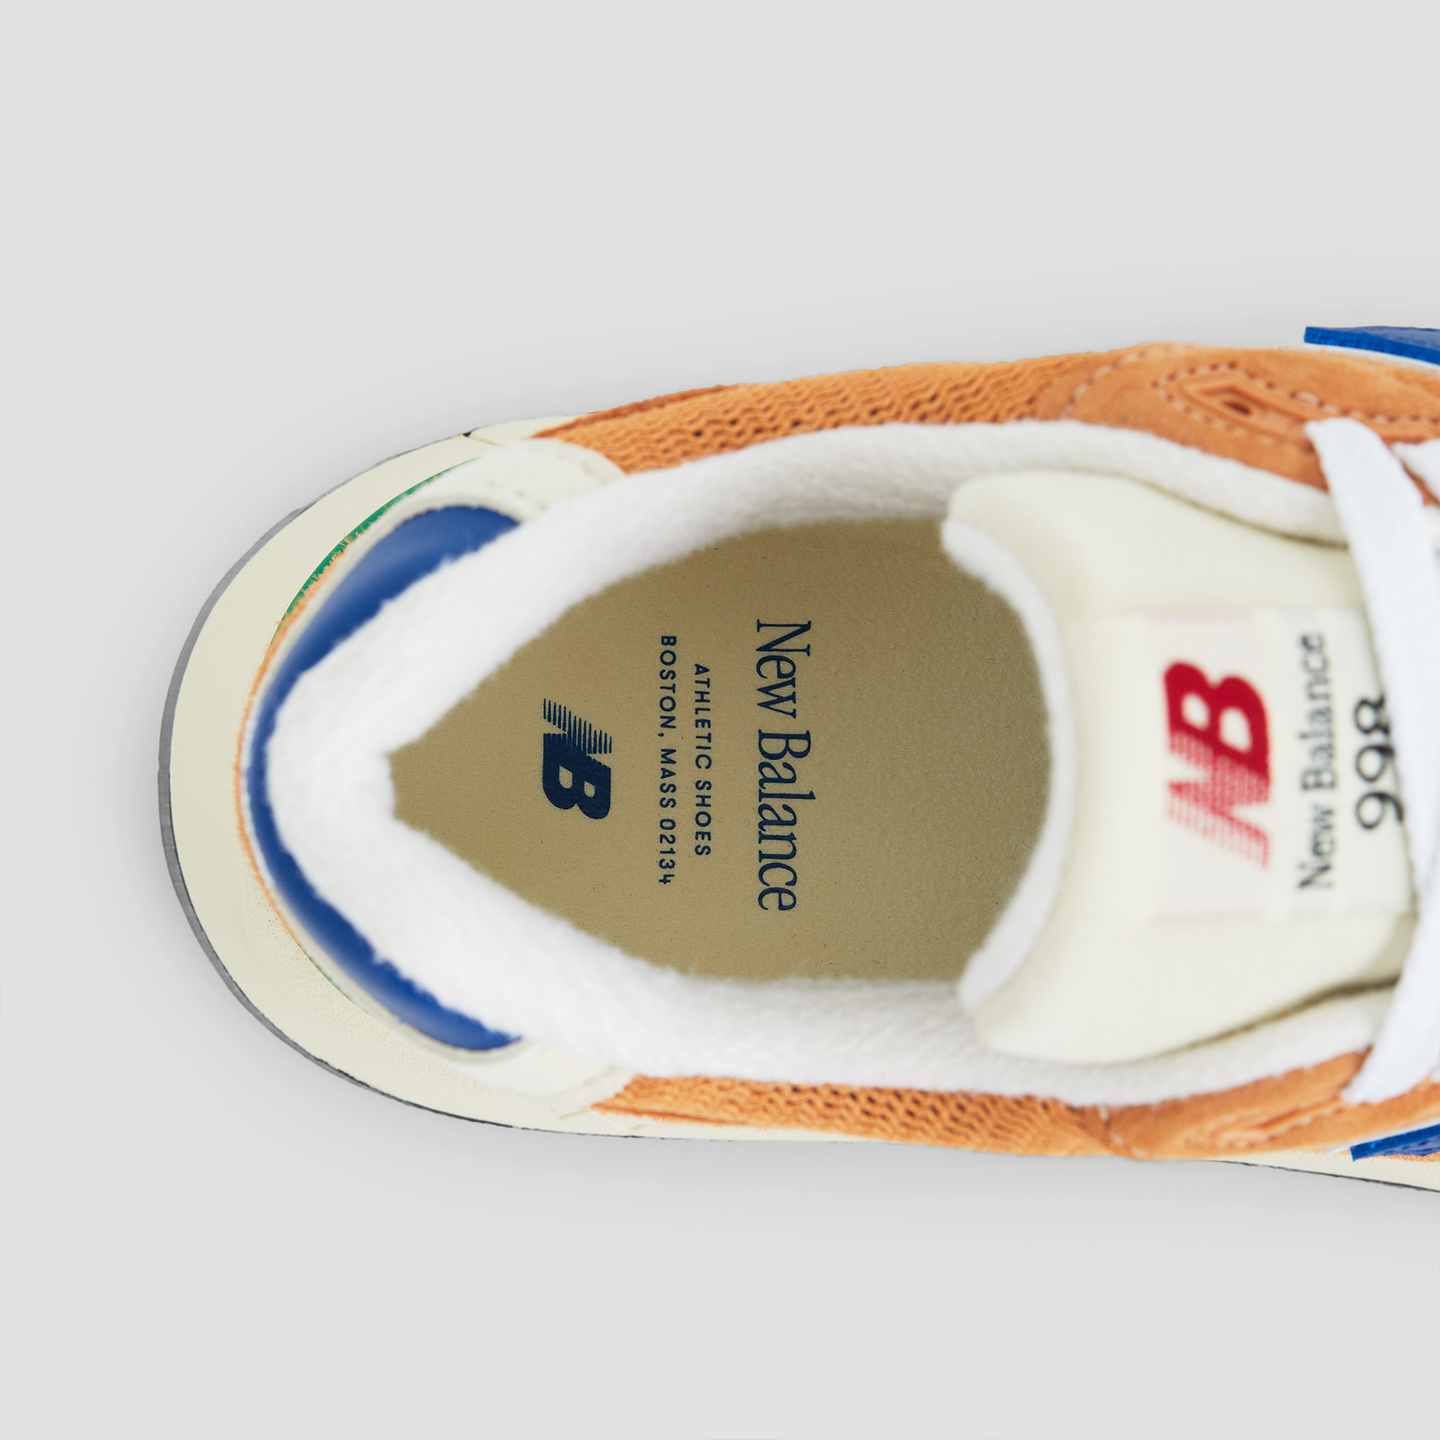 Unisex cipő New Balance U998OB – narancssárga